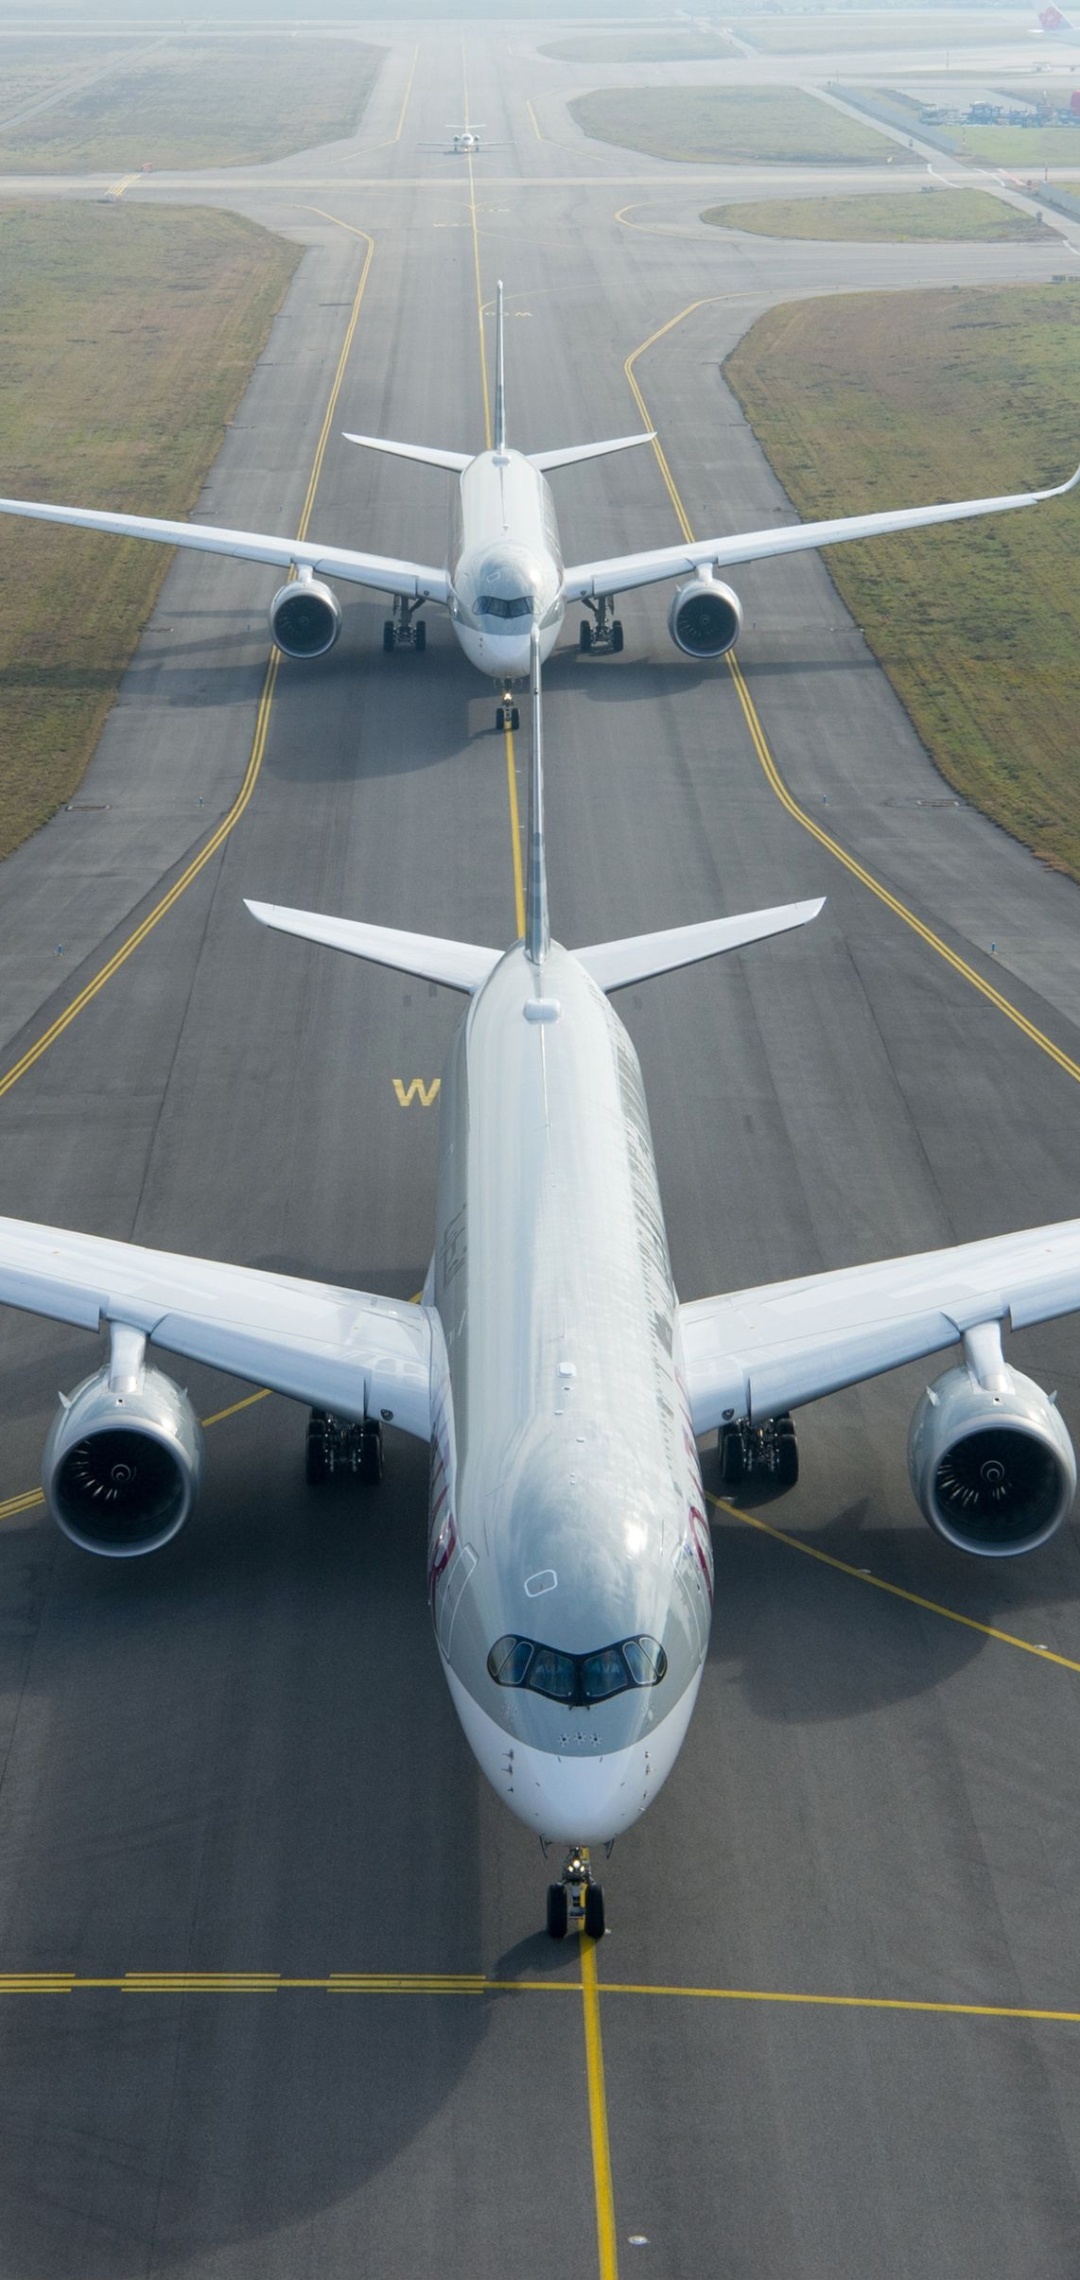 Qatar Airways, Airbus A350, Travel vehicles, Qatar destinations, 1080x2280 HD Phone